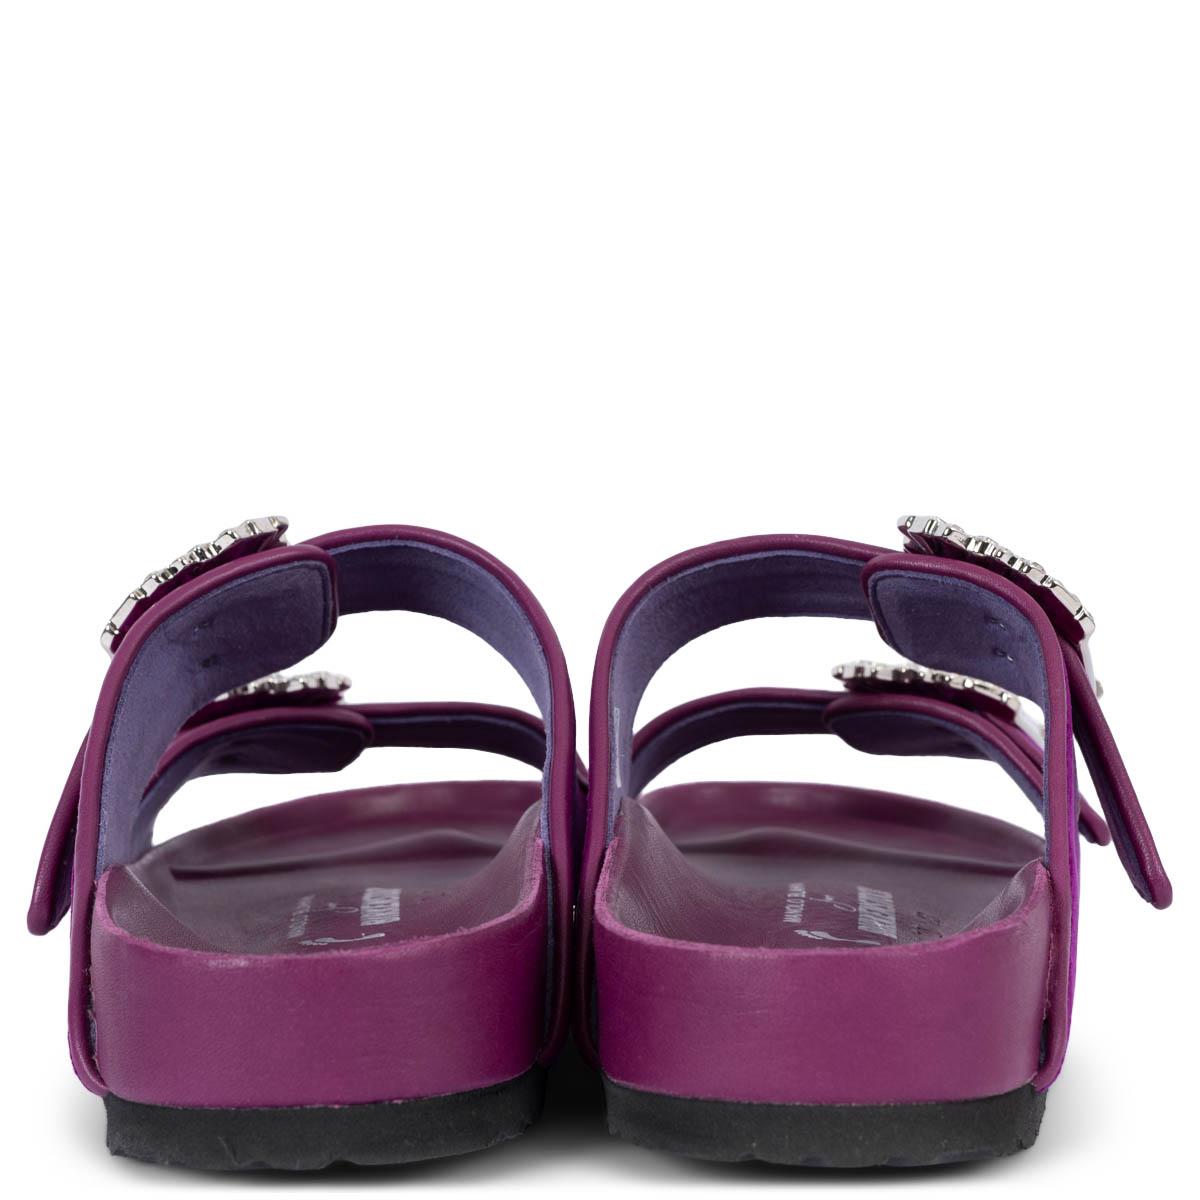 Women's MANOLO BLAHNIK x BIRKENSTOCK fuchsia velvet 2020 EMBELLISHED Sandals Shoes 41